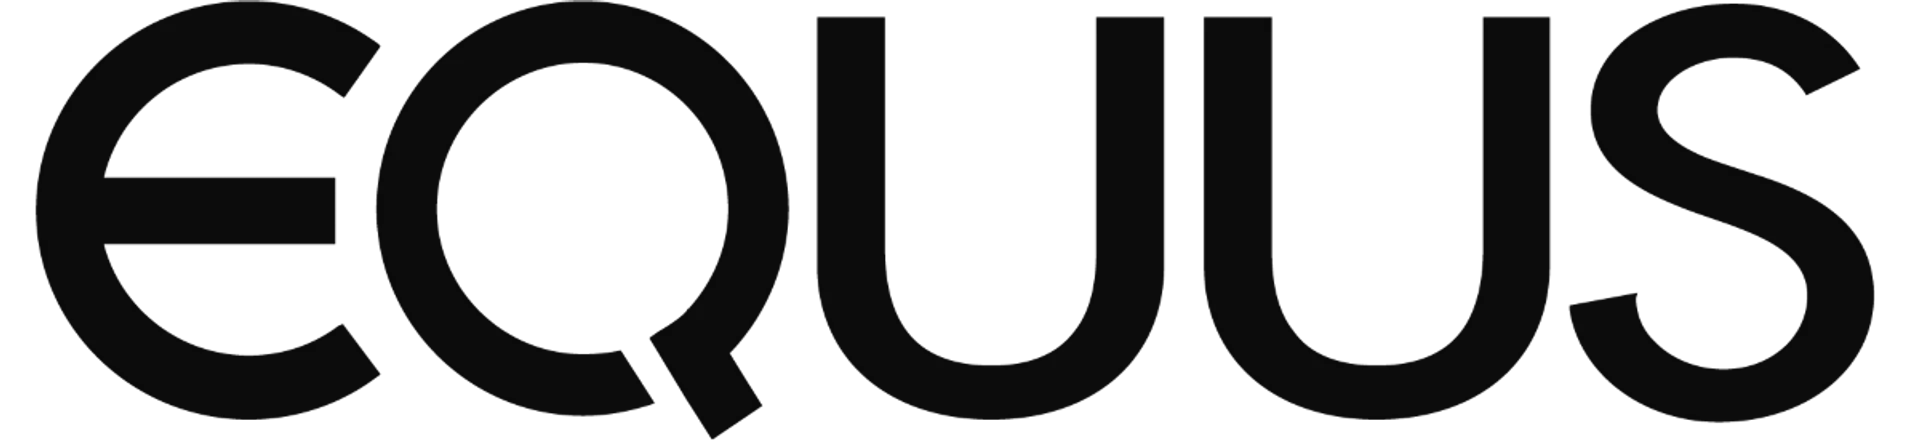 EQUUS logo